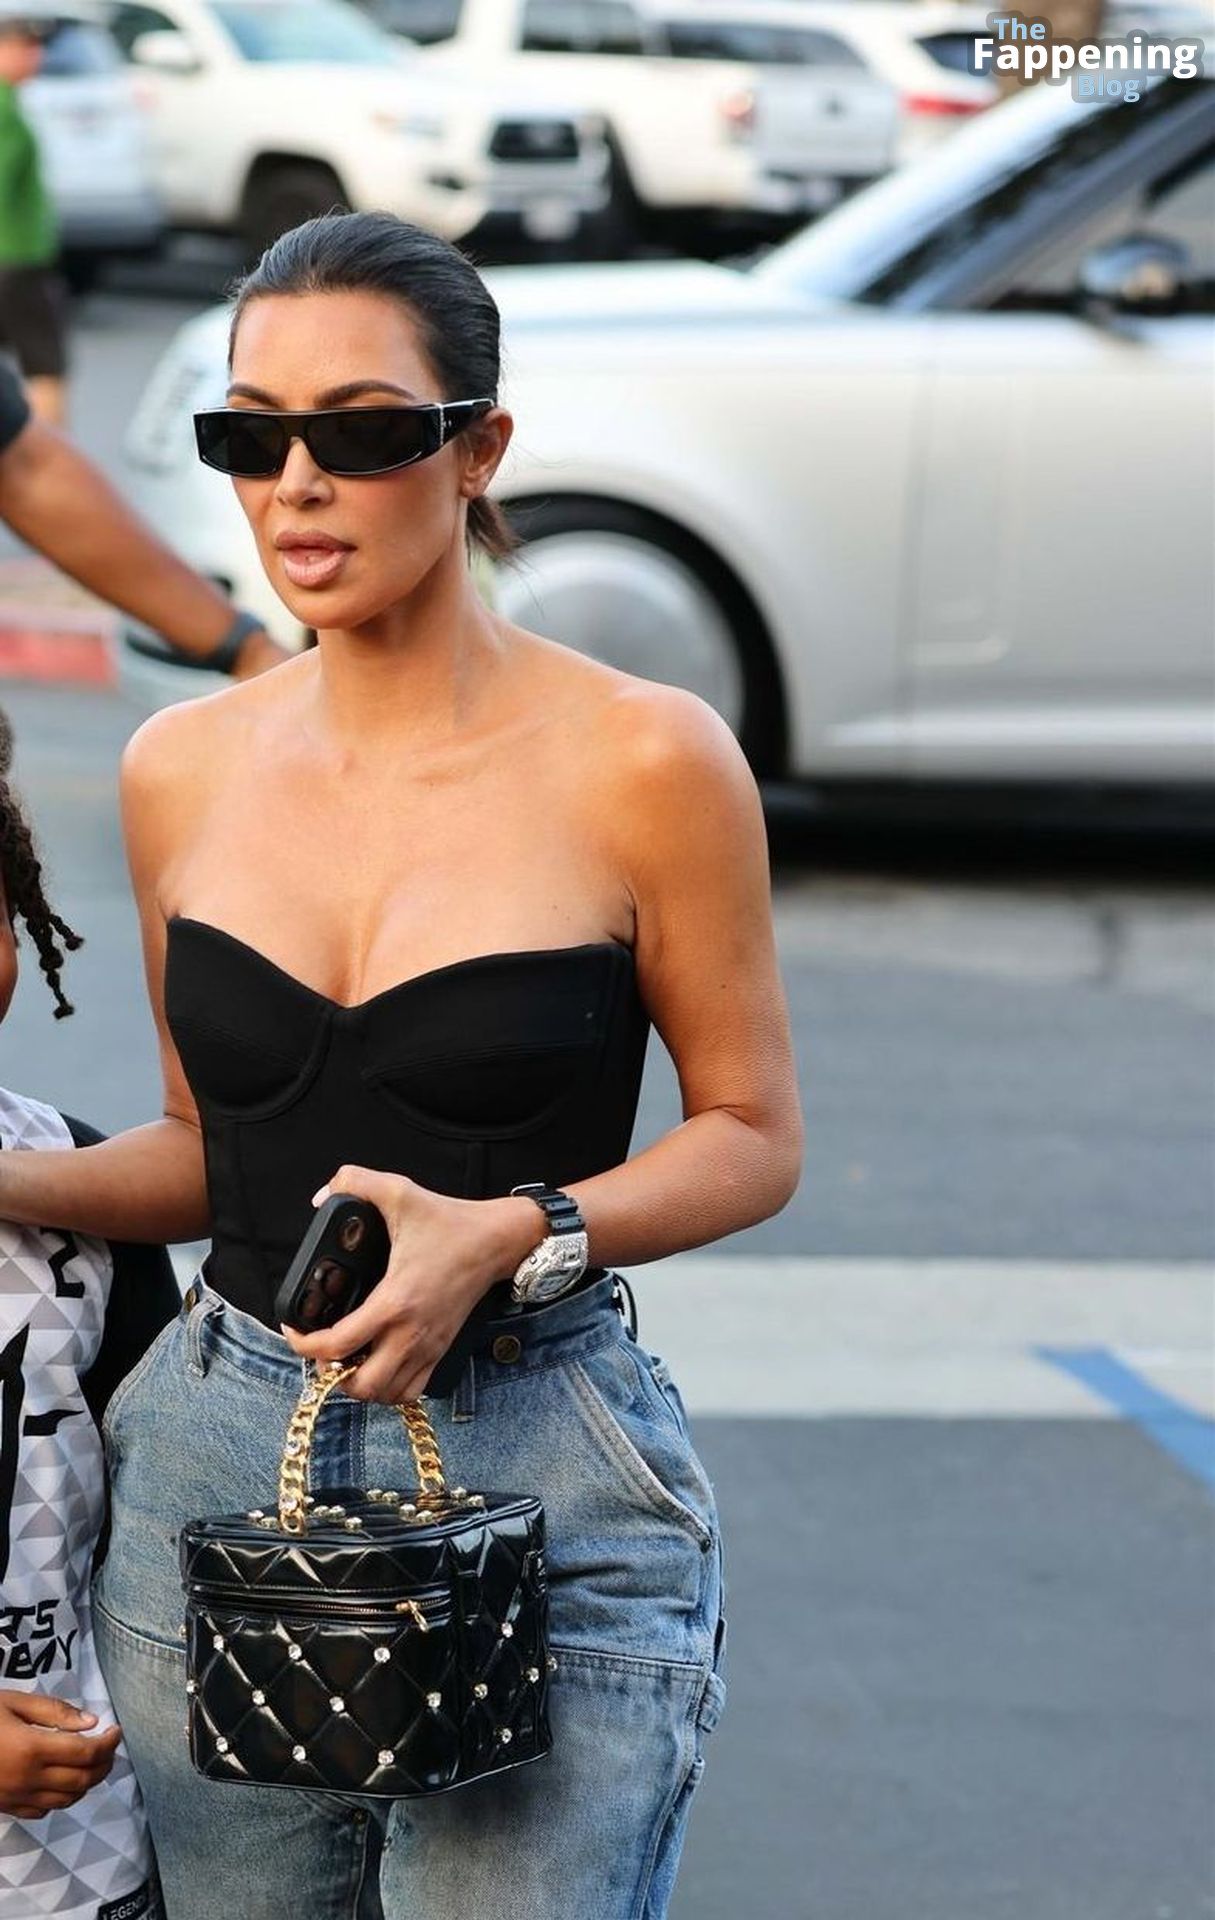 Kim-Kardashian-Sexy-144-The-Fappening-Blog.jpg